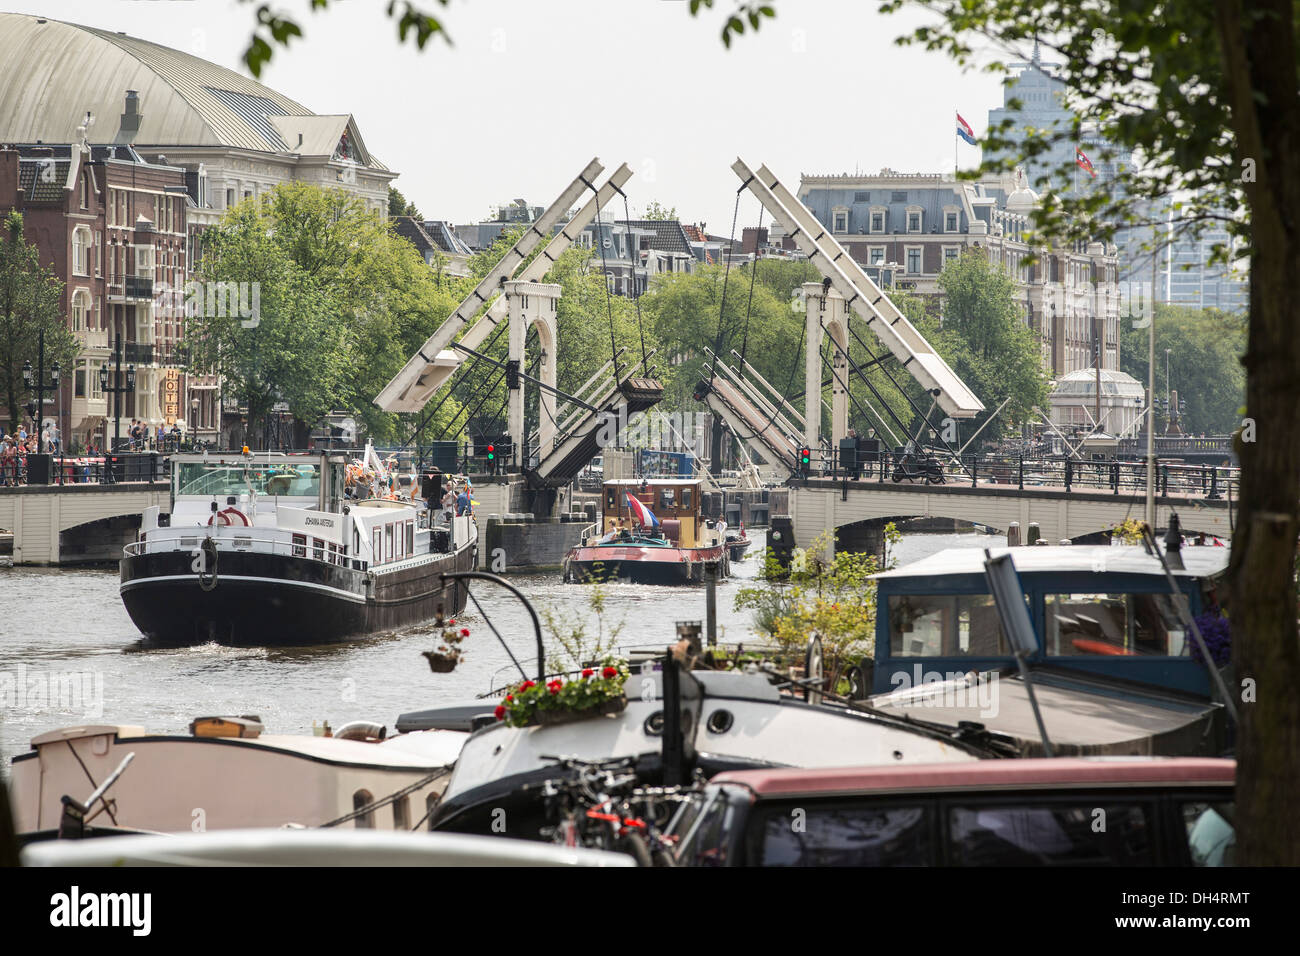 Pays-bas, Amsterdam, bateaux passant ouvert pont-levis Pont maigre. En face houseboats. Retour du théâtre Carré, Amstel Hotel Banque D'Images